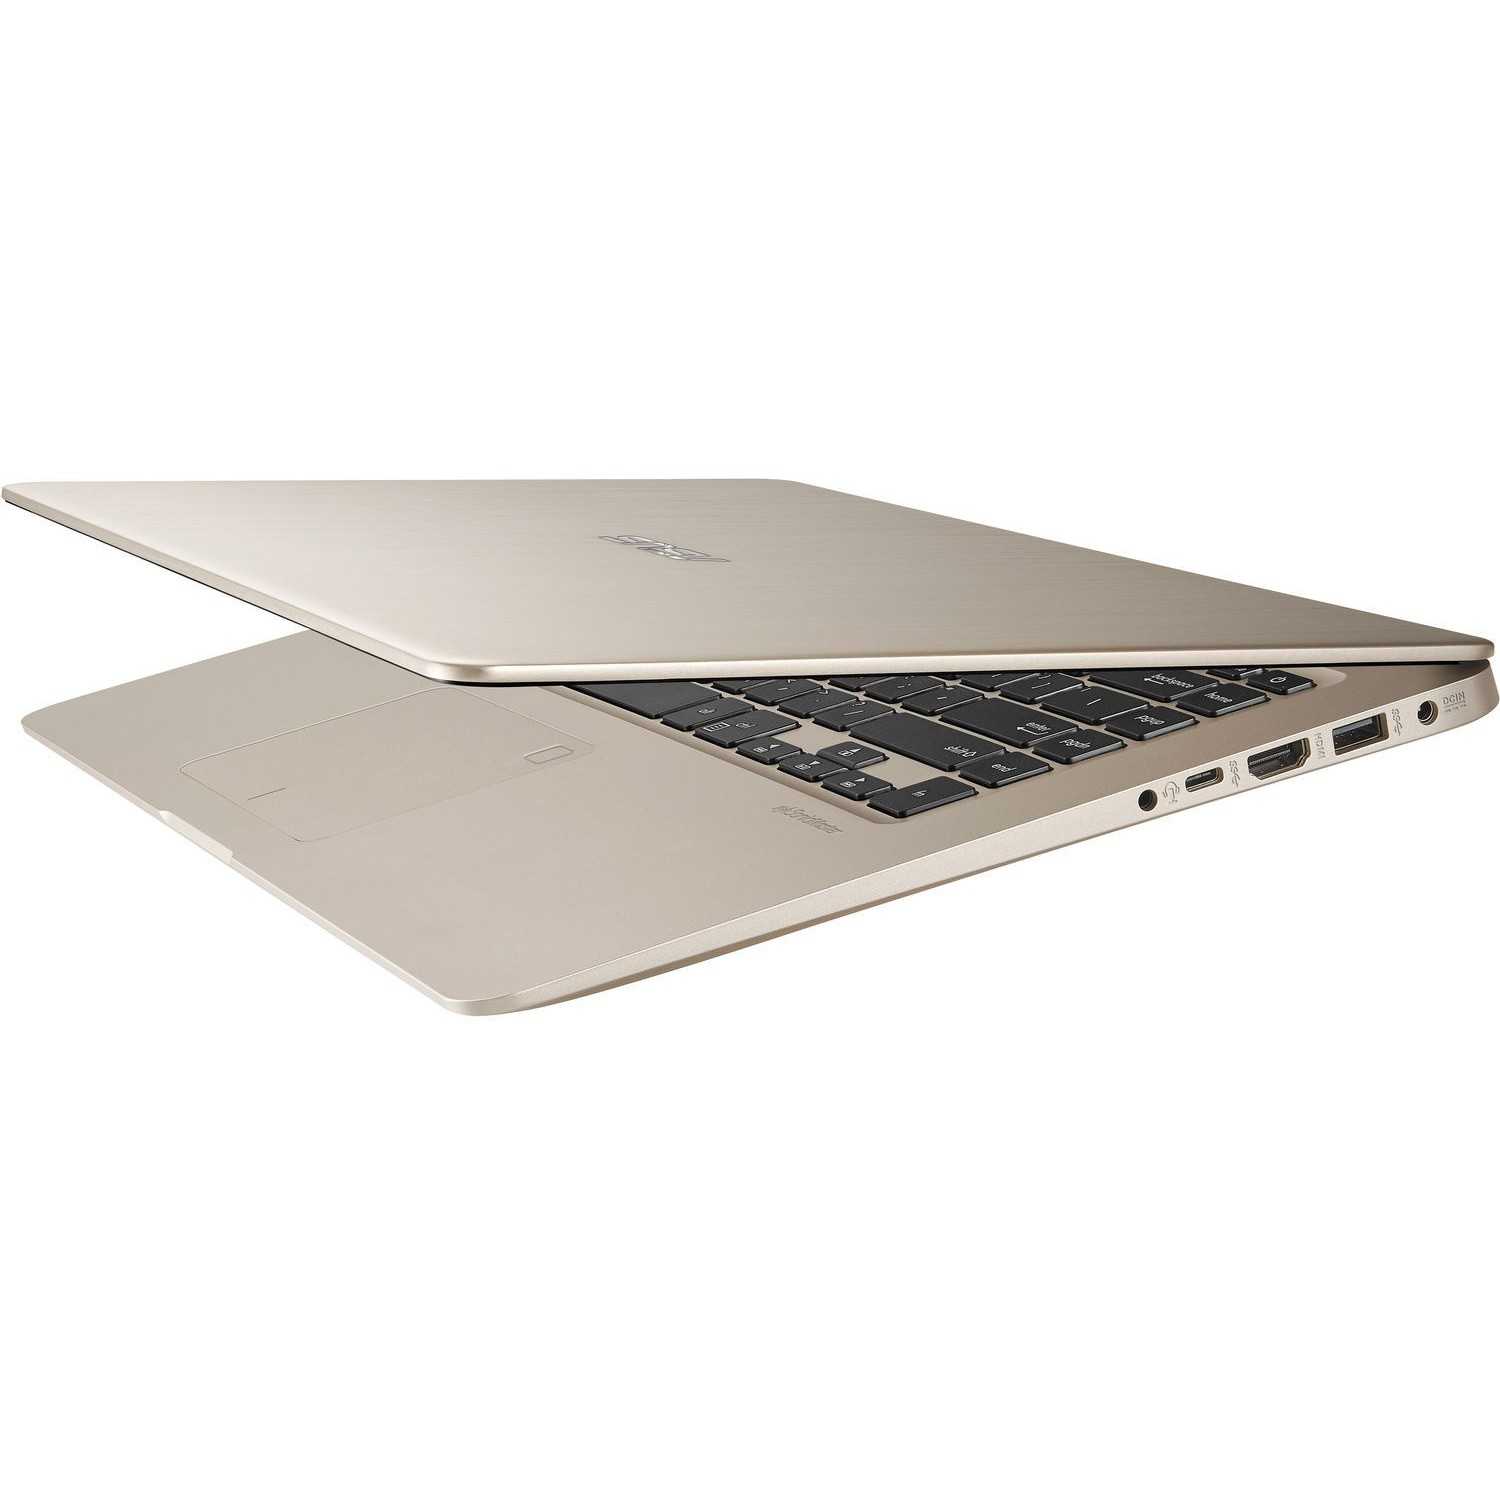 Ноутбук asus vivobook s15 s533fl-bq057t — купить, цена и характеристики, отзывы